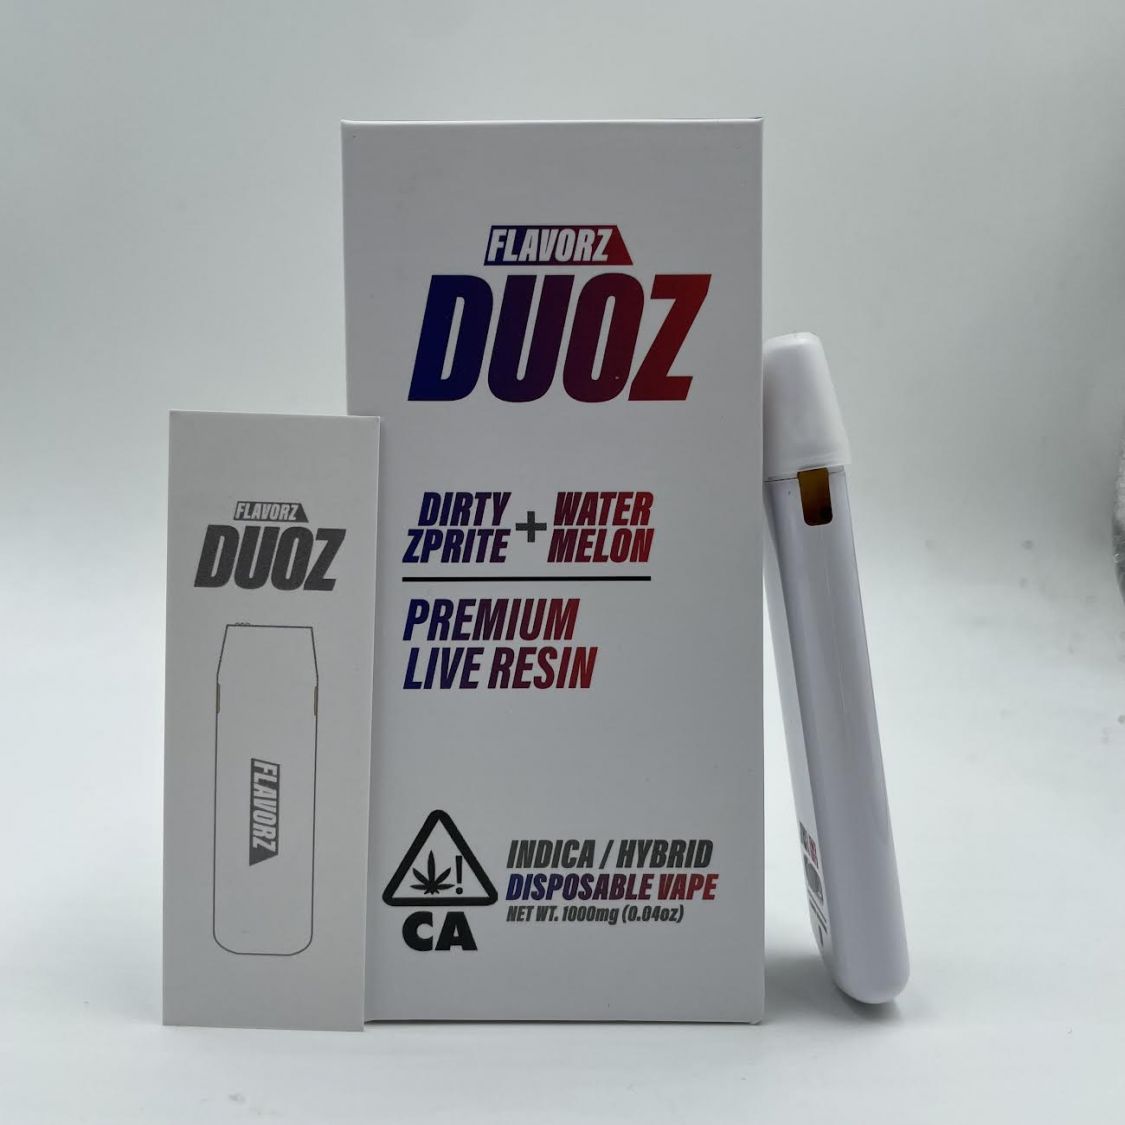 Flavorz Duoz Live Resin | Flavorz Duoz Disposable | Flavorz Carts